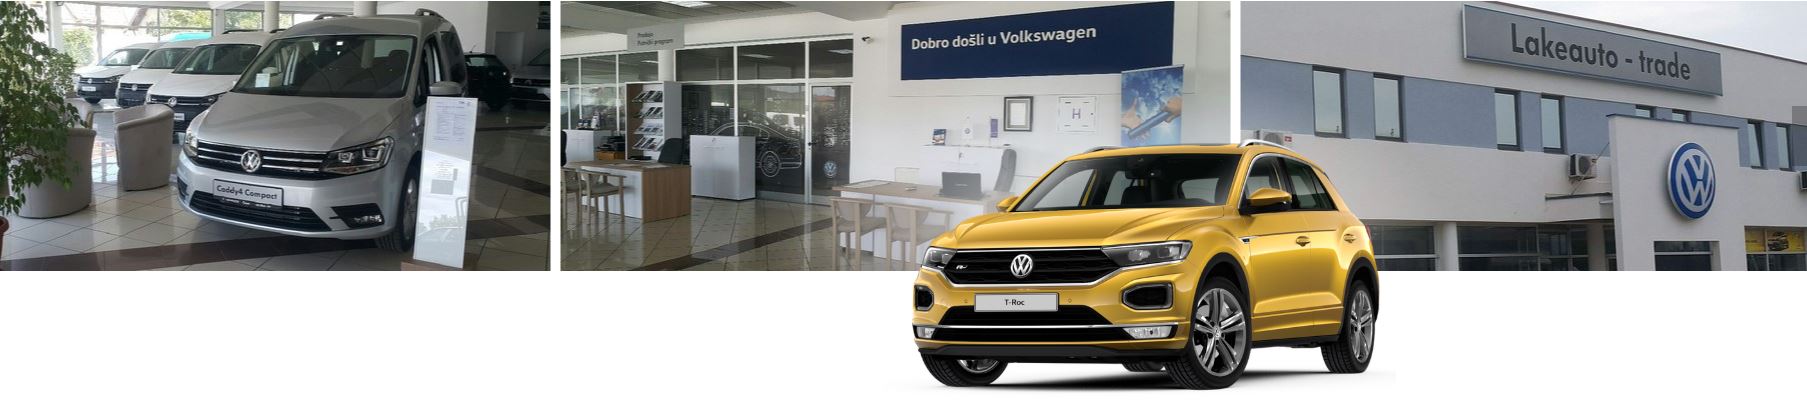 Lakeauto Trade doo ovlašćeno prodajno-servisni centar za vozila marke Volkswagen Čačak